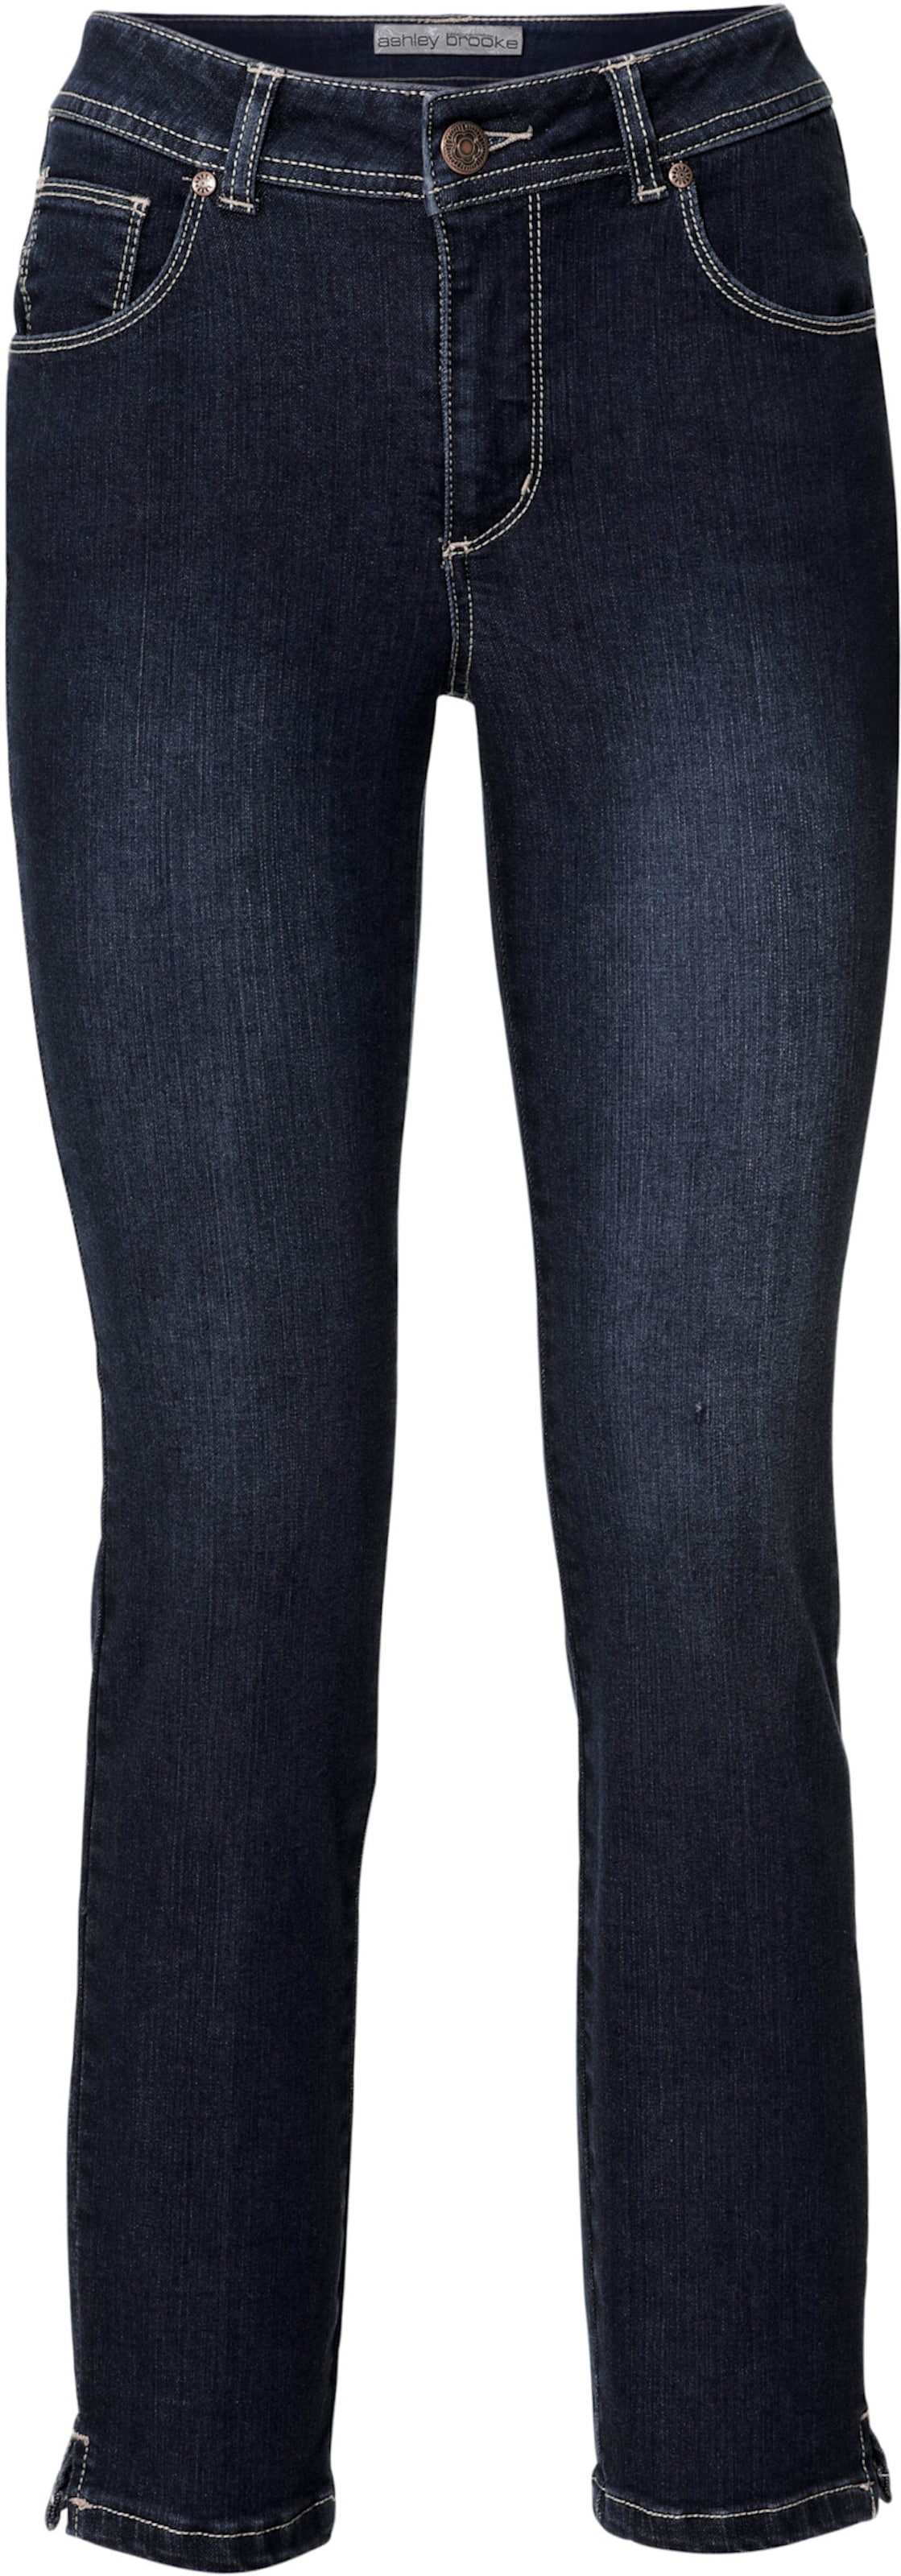 Bauchweg-Jeans in dark denim von heine